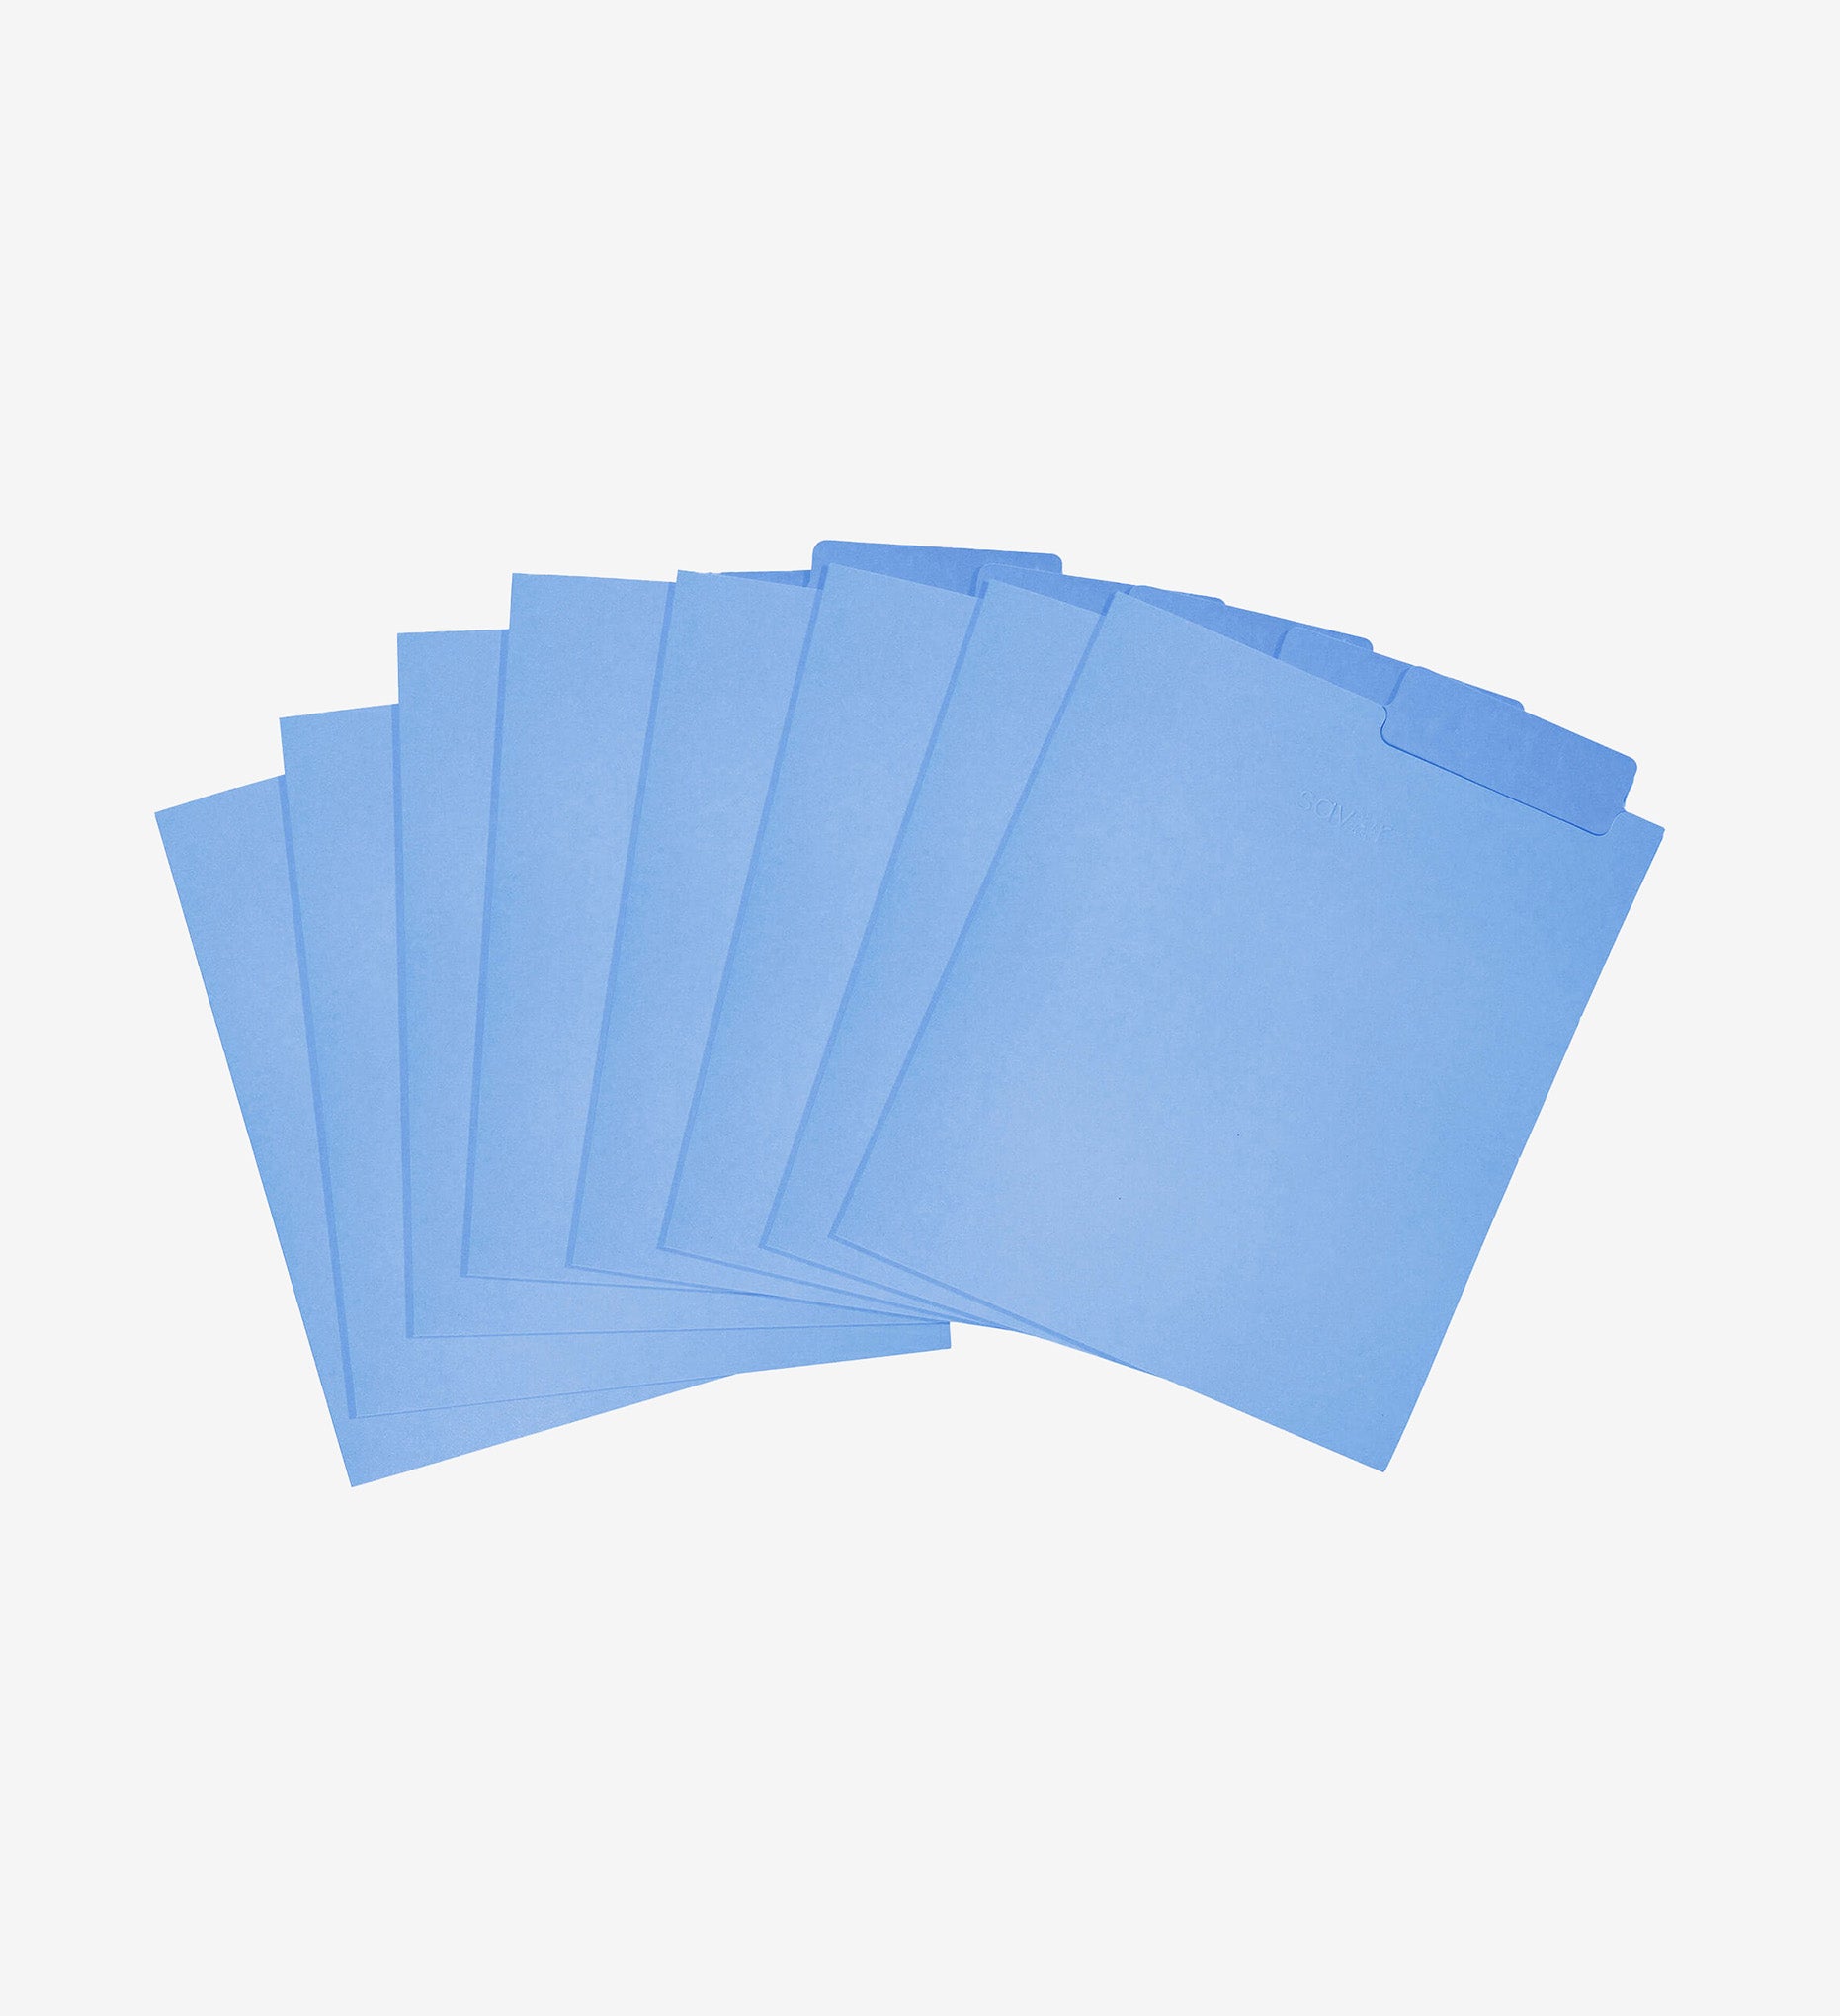 Periwinkle file folders.